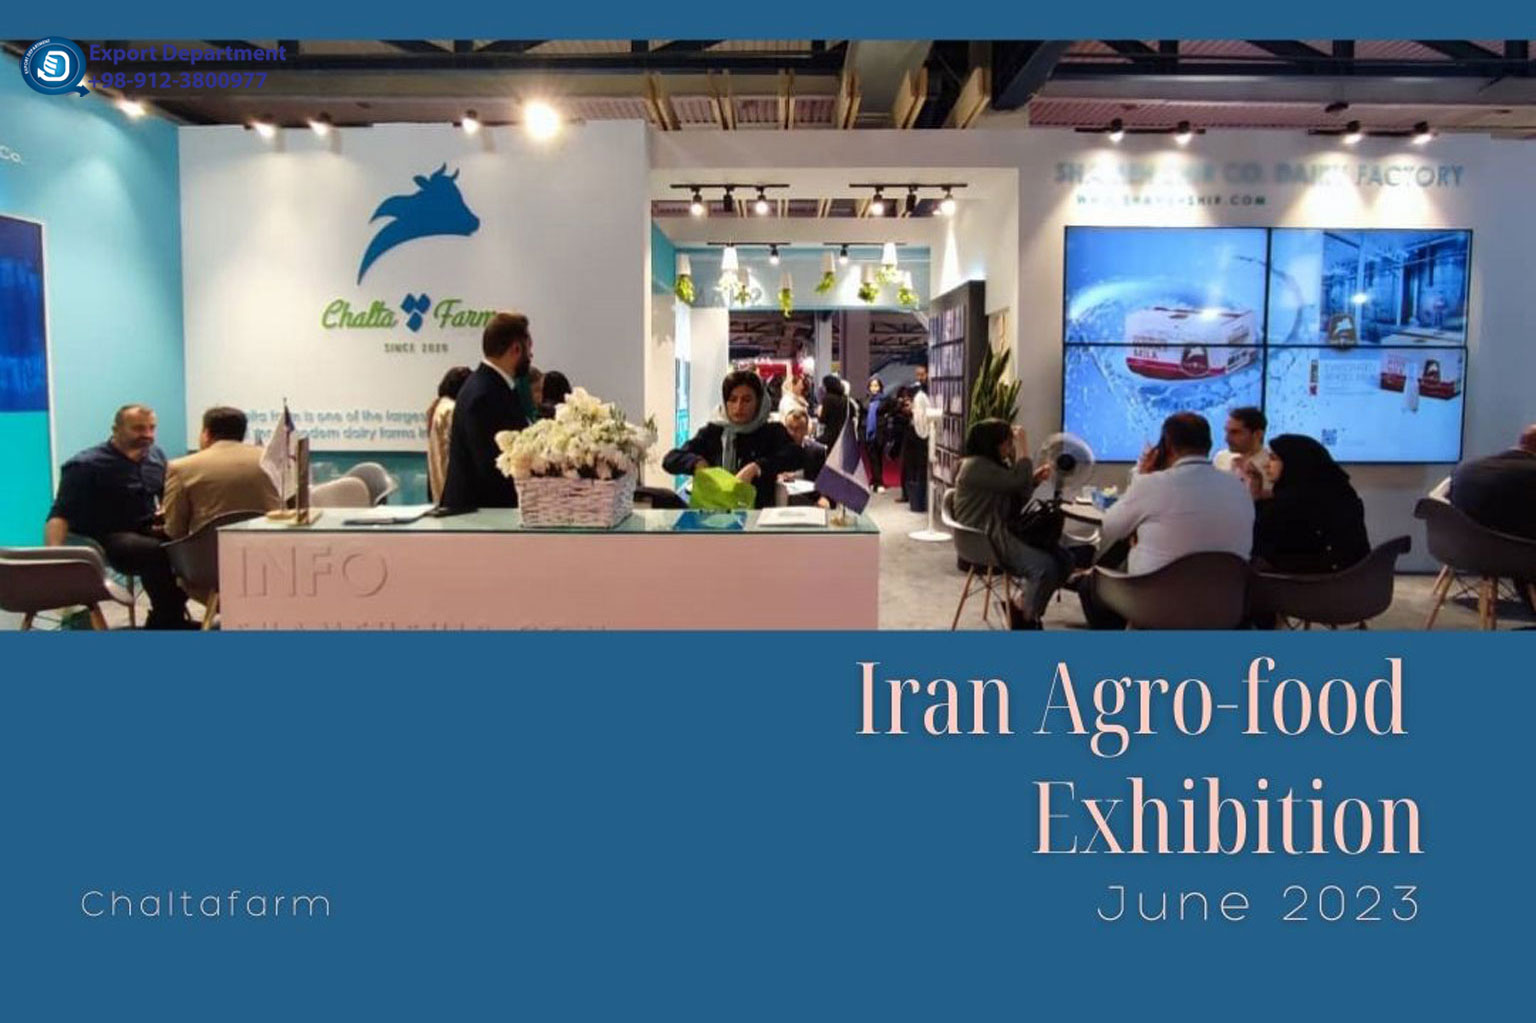 ألبان ومساحيق چالتافارم: رحلة ناجحة في معرض إيران للأغذية الزراعية 2023